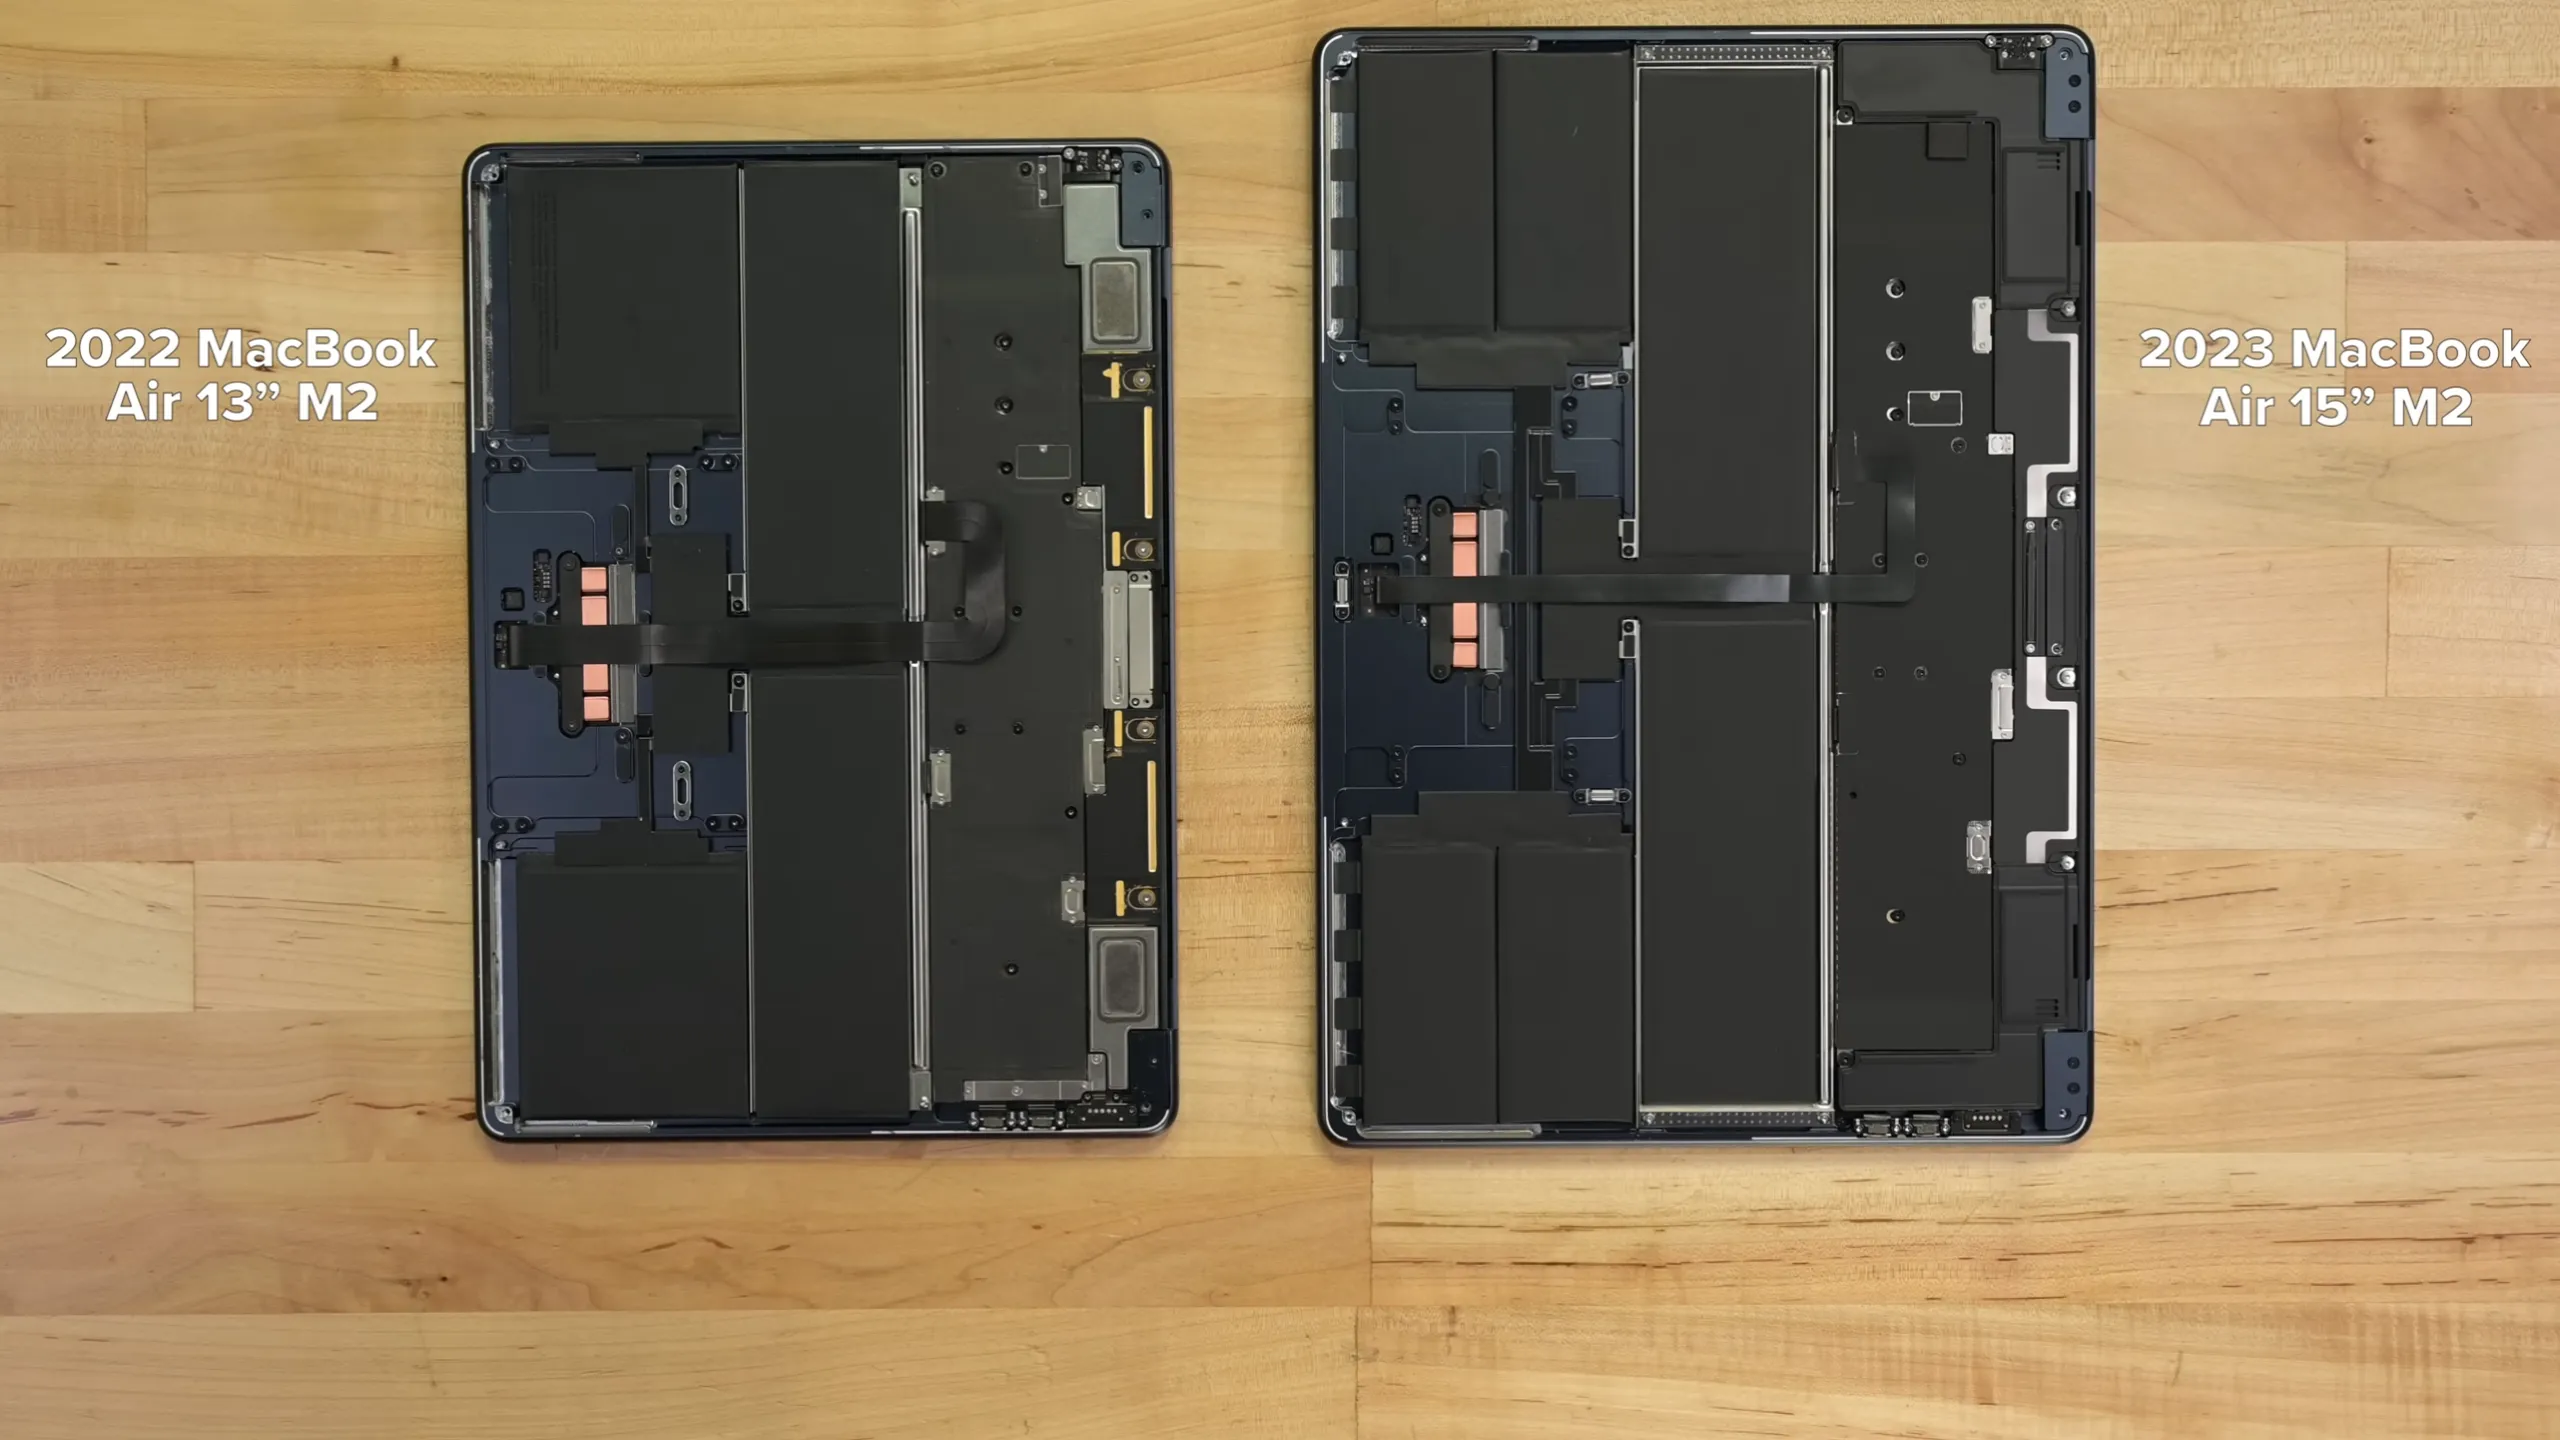 Tháo tung MacBook Air 15-inch M2 cùng iFixit: Nội thất quen thuộc với hệ thống loa mới